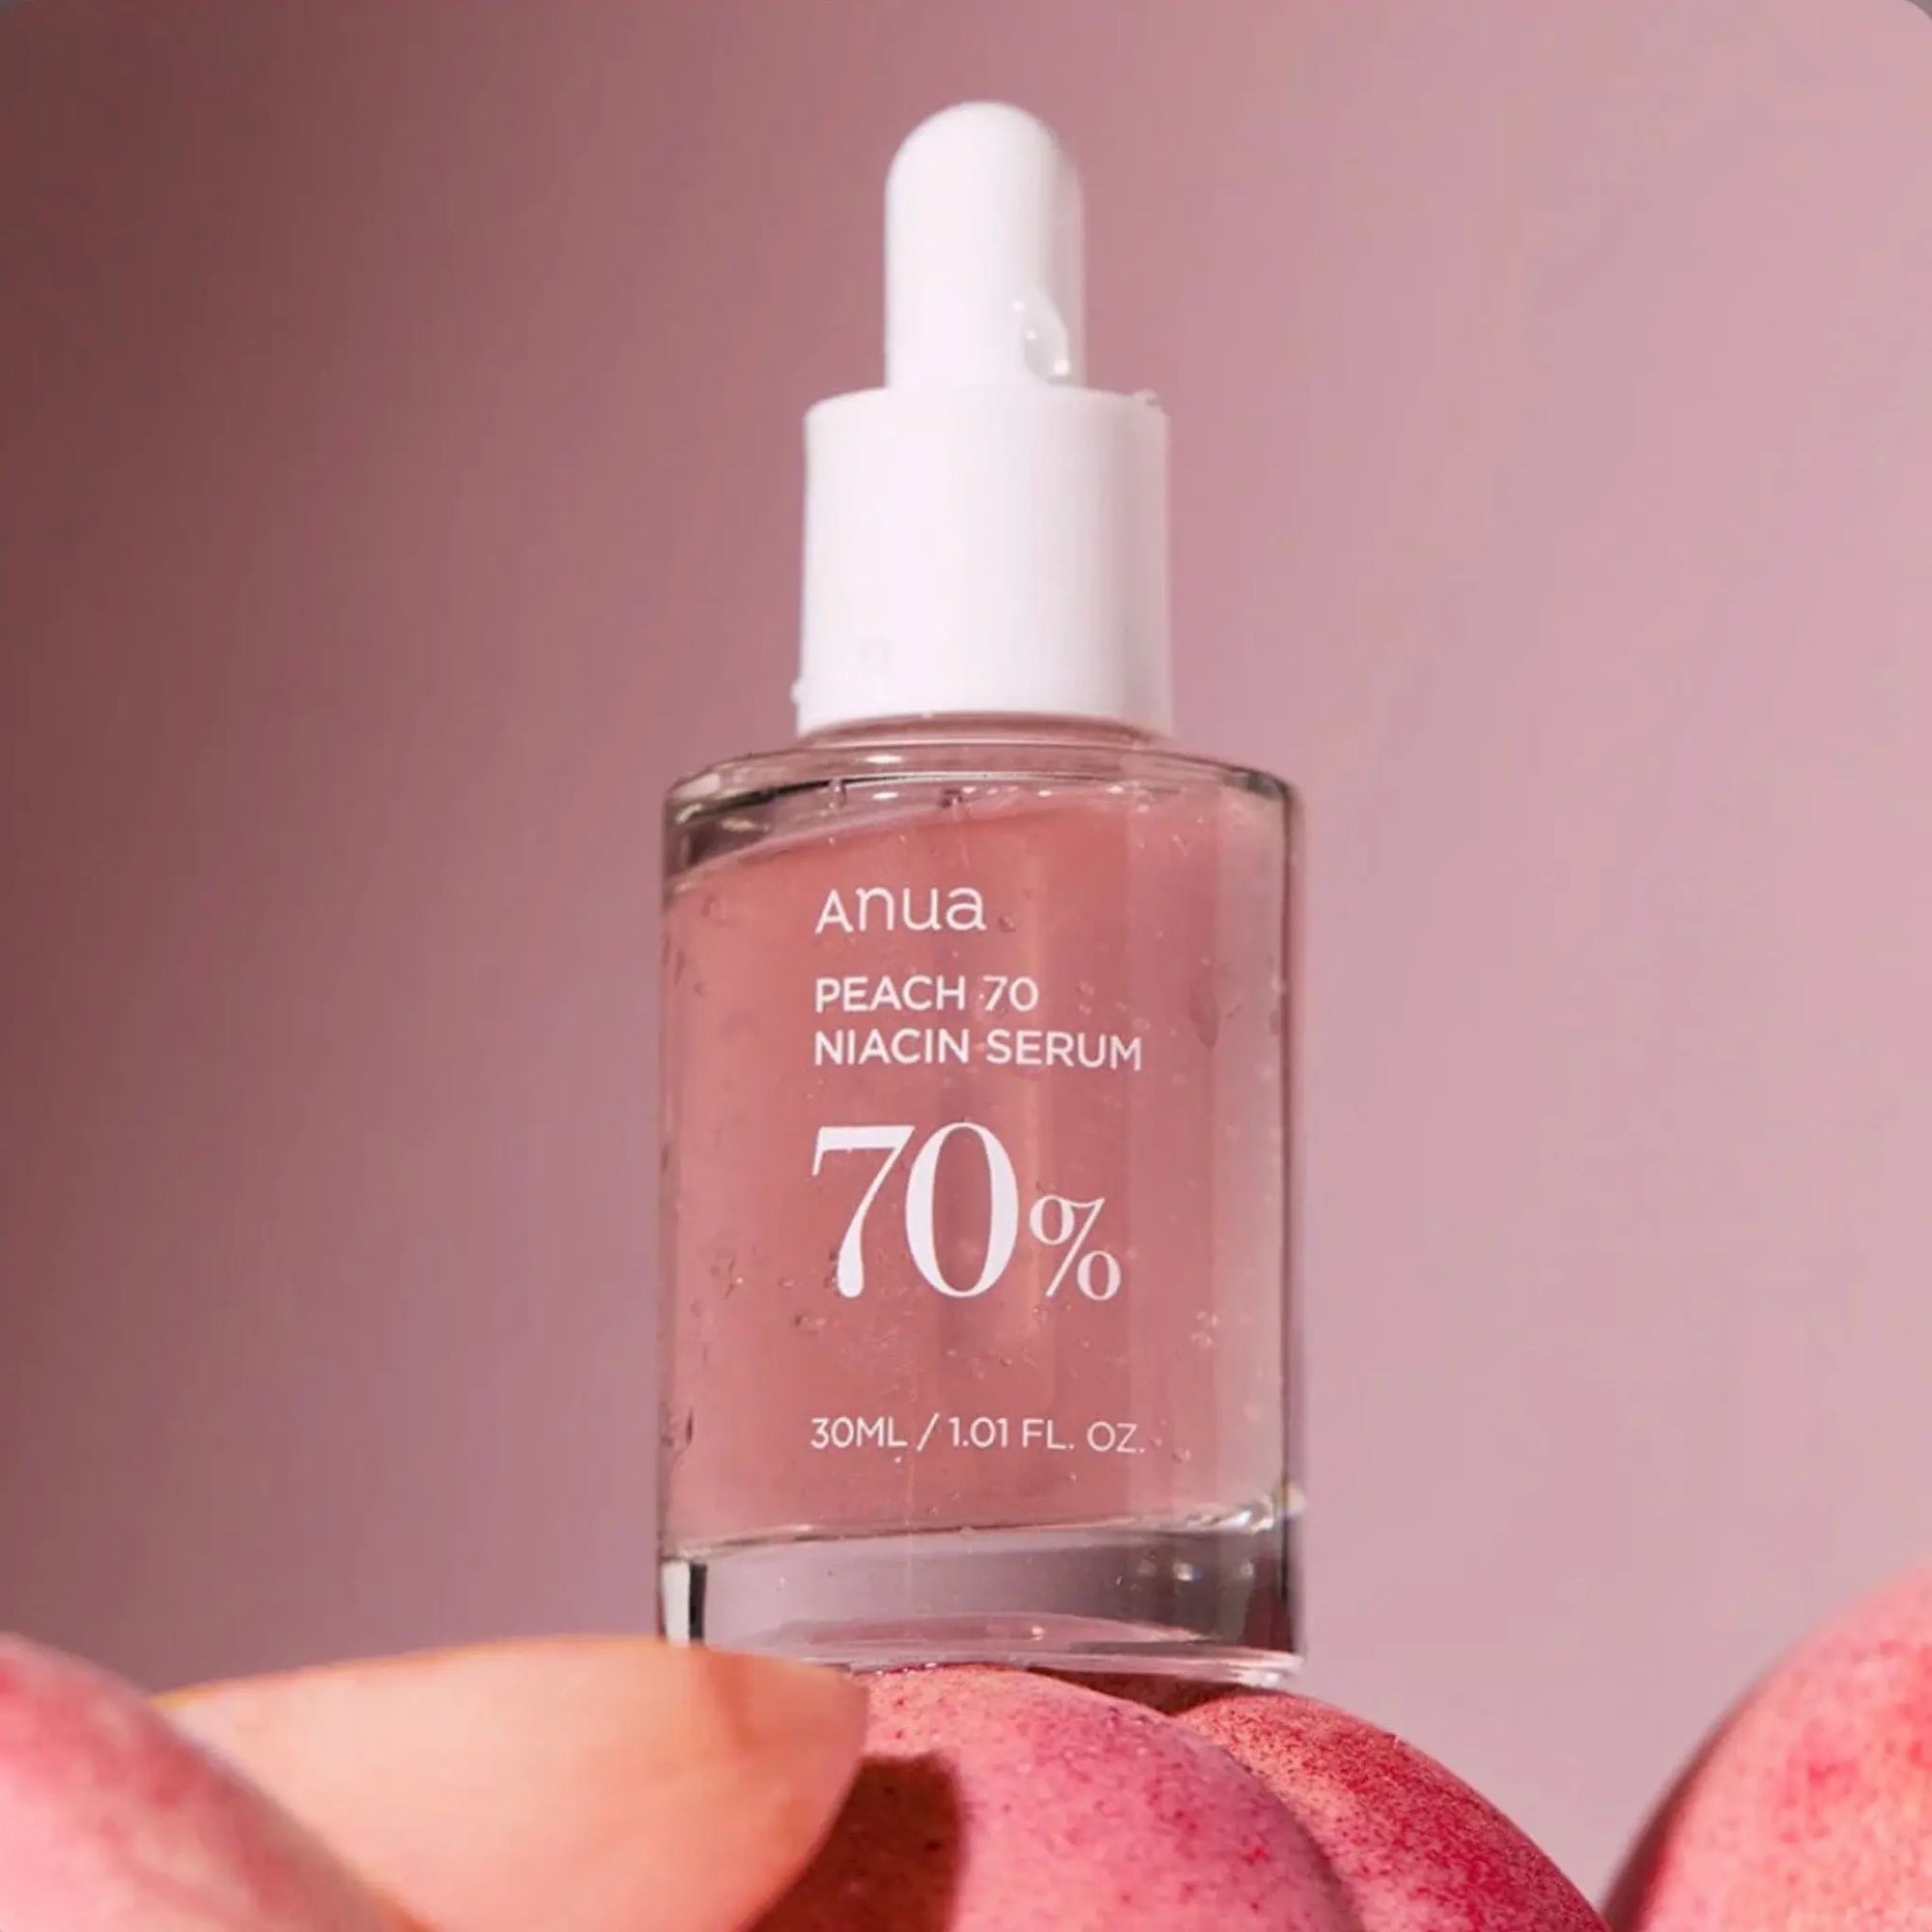 Anua - Peach 70% Niacinamide Serum 30mL Anua